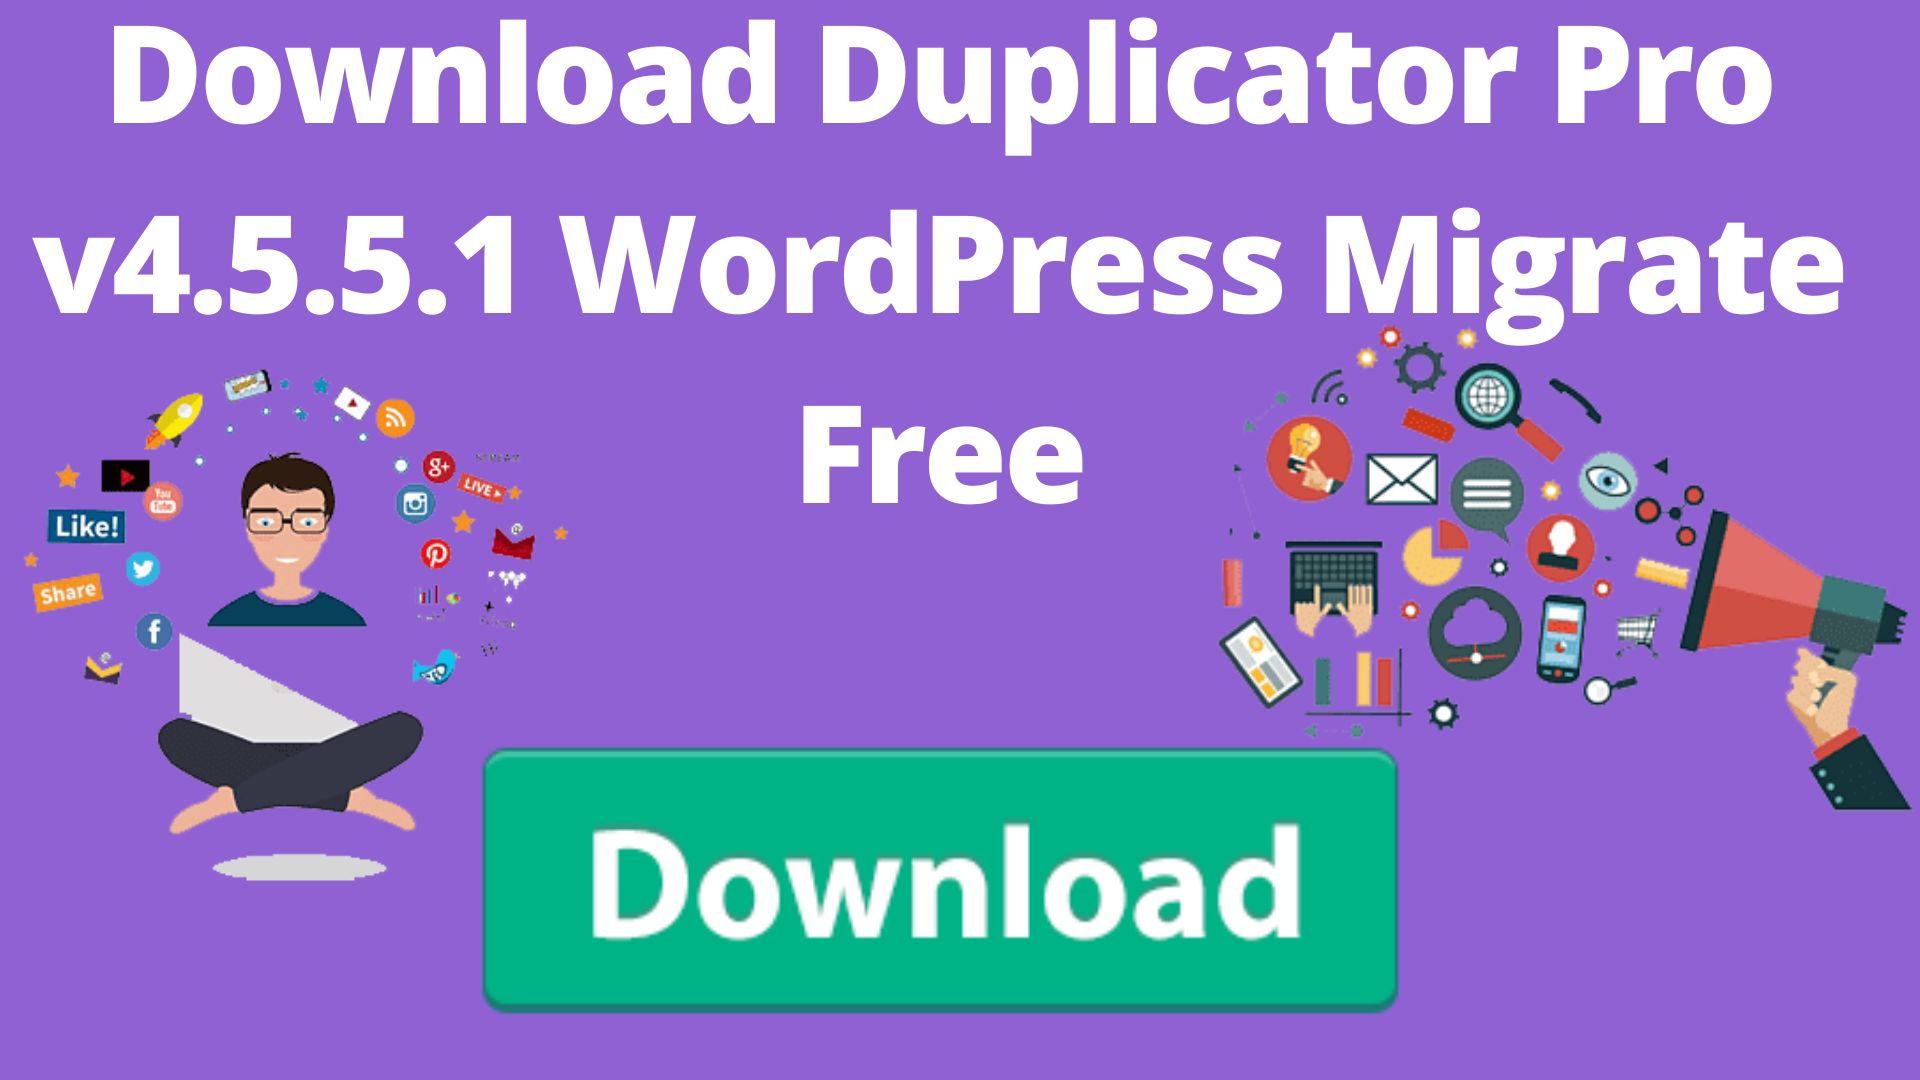 Download duplicator pro v4. 5. 5. 1 wordpress migrate free